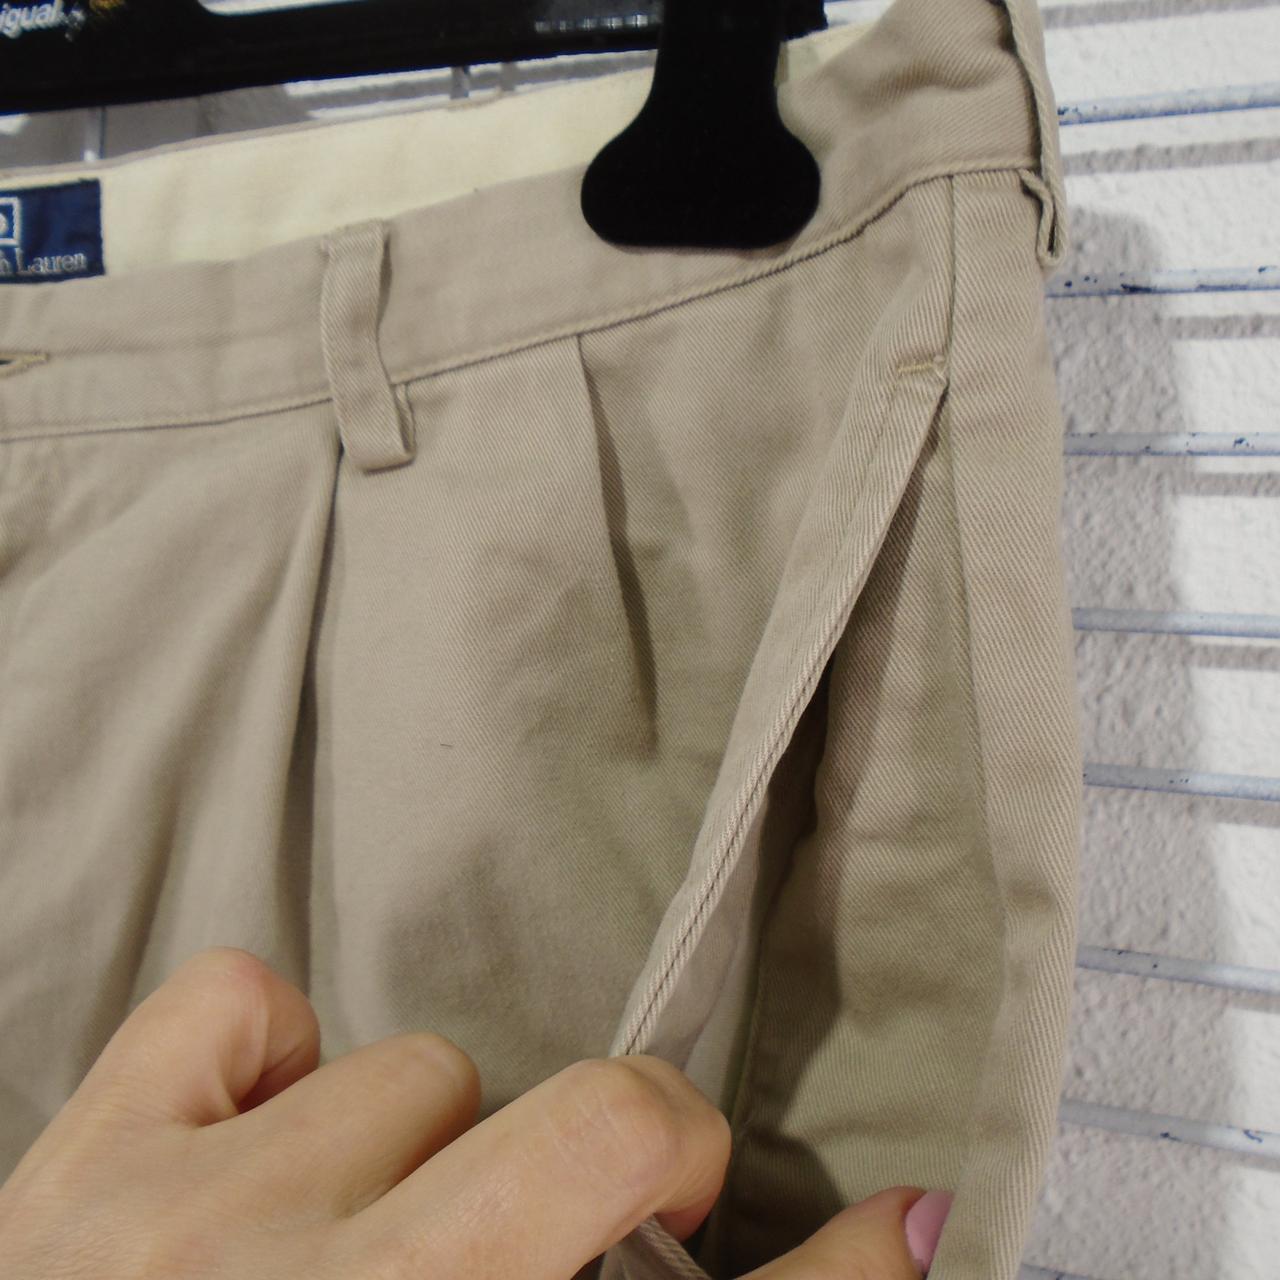 Pantalones cortos de hombre Ralph Lauren. Beige. M. Usado. Bien